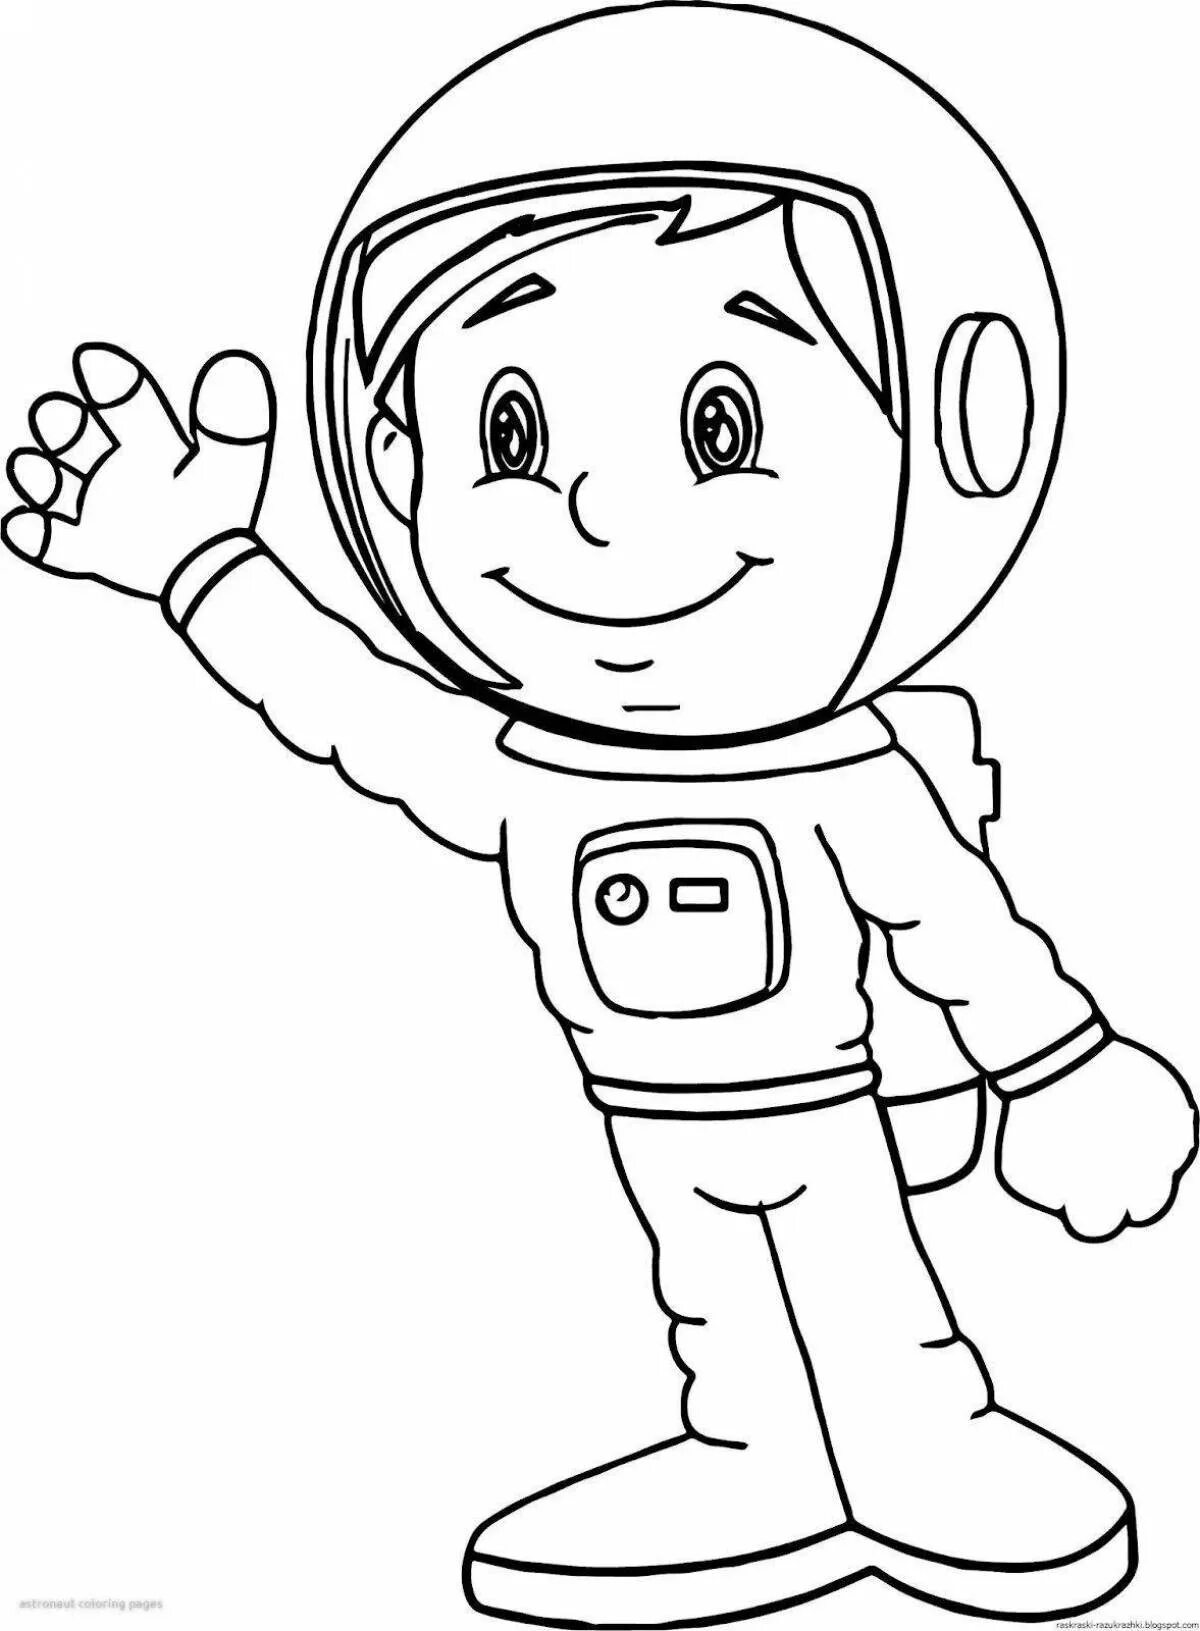 Космонавт раскраска для детей. Космонавт раскраска для малышей. Скафандр раскраска для детей. Детские раскраски космонавты.